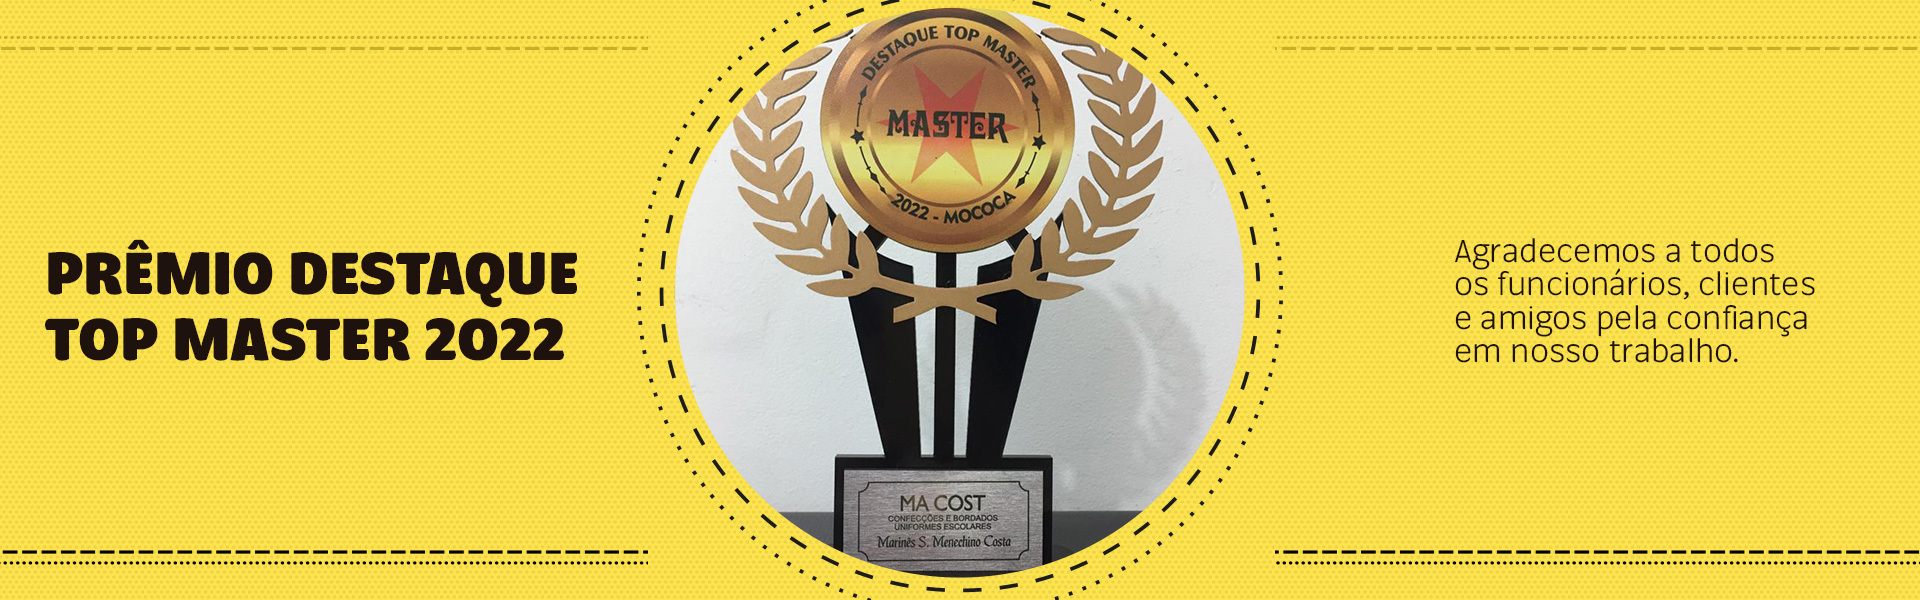 Prêmio Destaque Top Master 2022 @Desktop